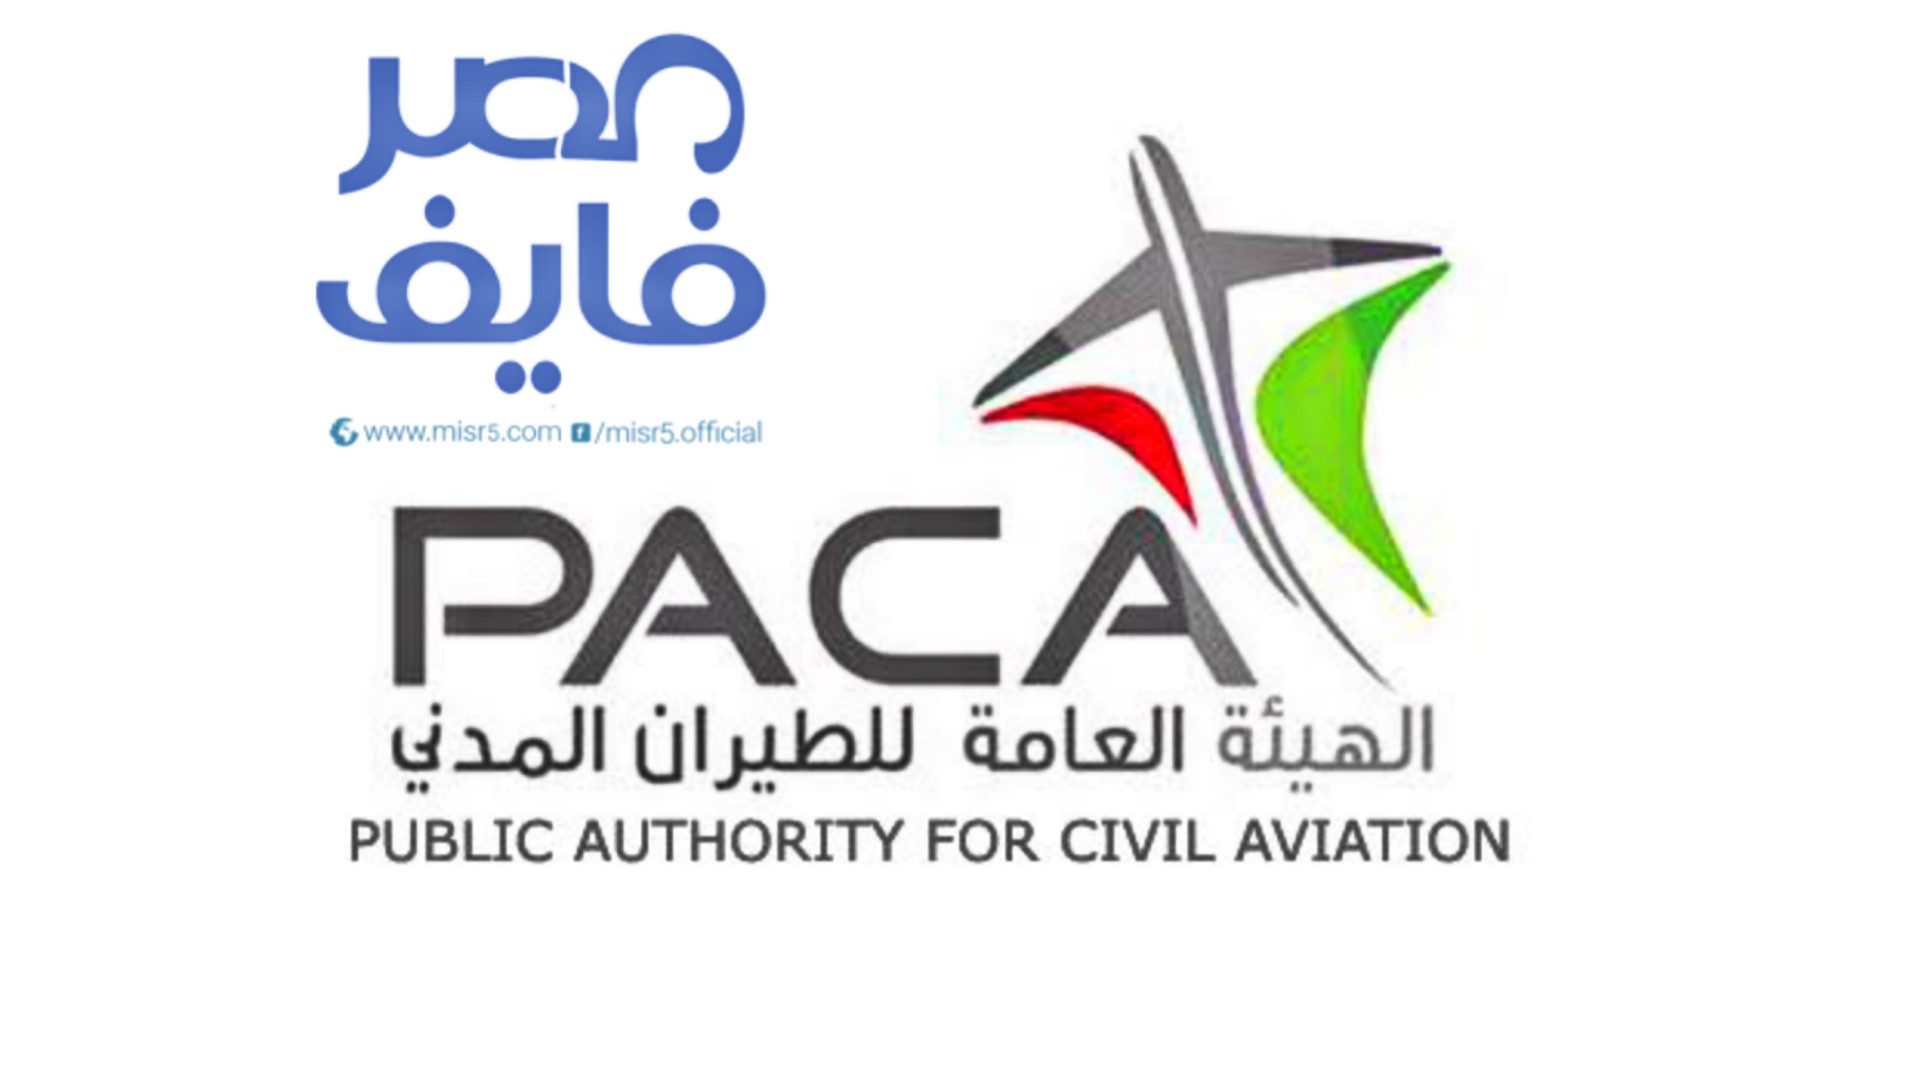 الهيئة العامة للطيران المدني تعلن وظائف إدارية لحديثي التخرج وذوي الخبرة رجال ونساء مع جميع الشروط